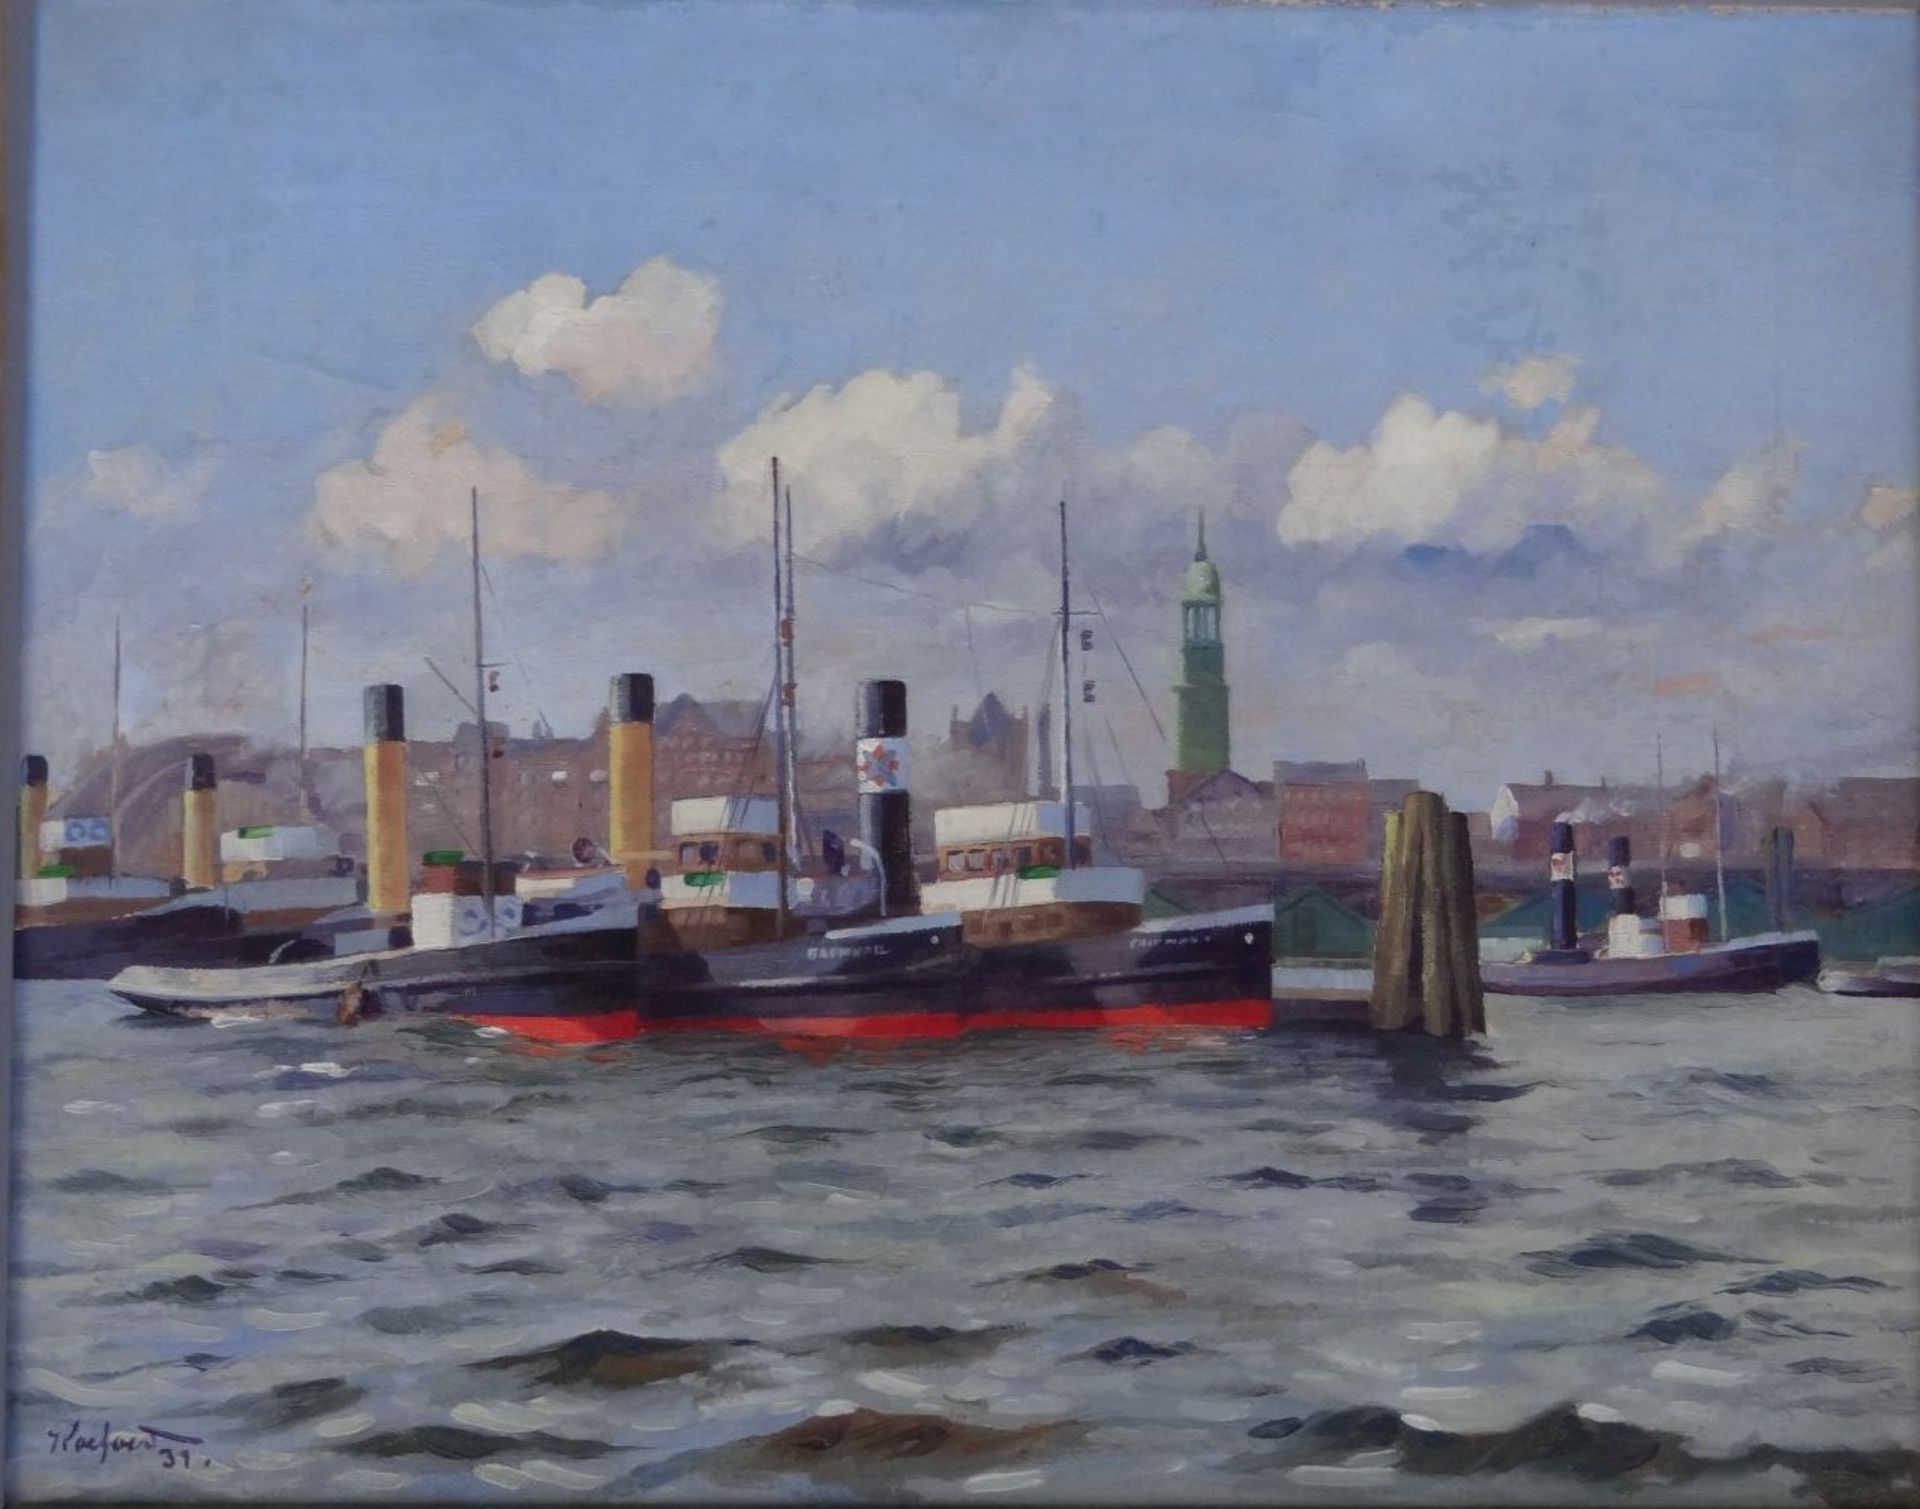 Koeford (oder ähnlich), 1931 "Hamburger Hafen", Öl/Leinen, gerahmt, RG 42x50 cm, frisch